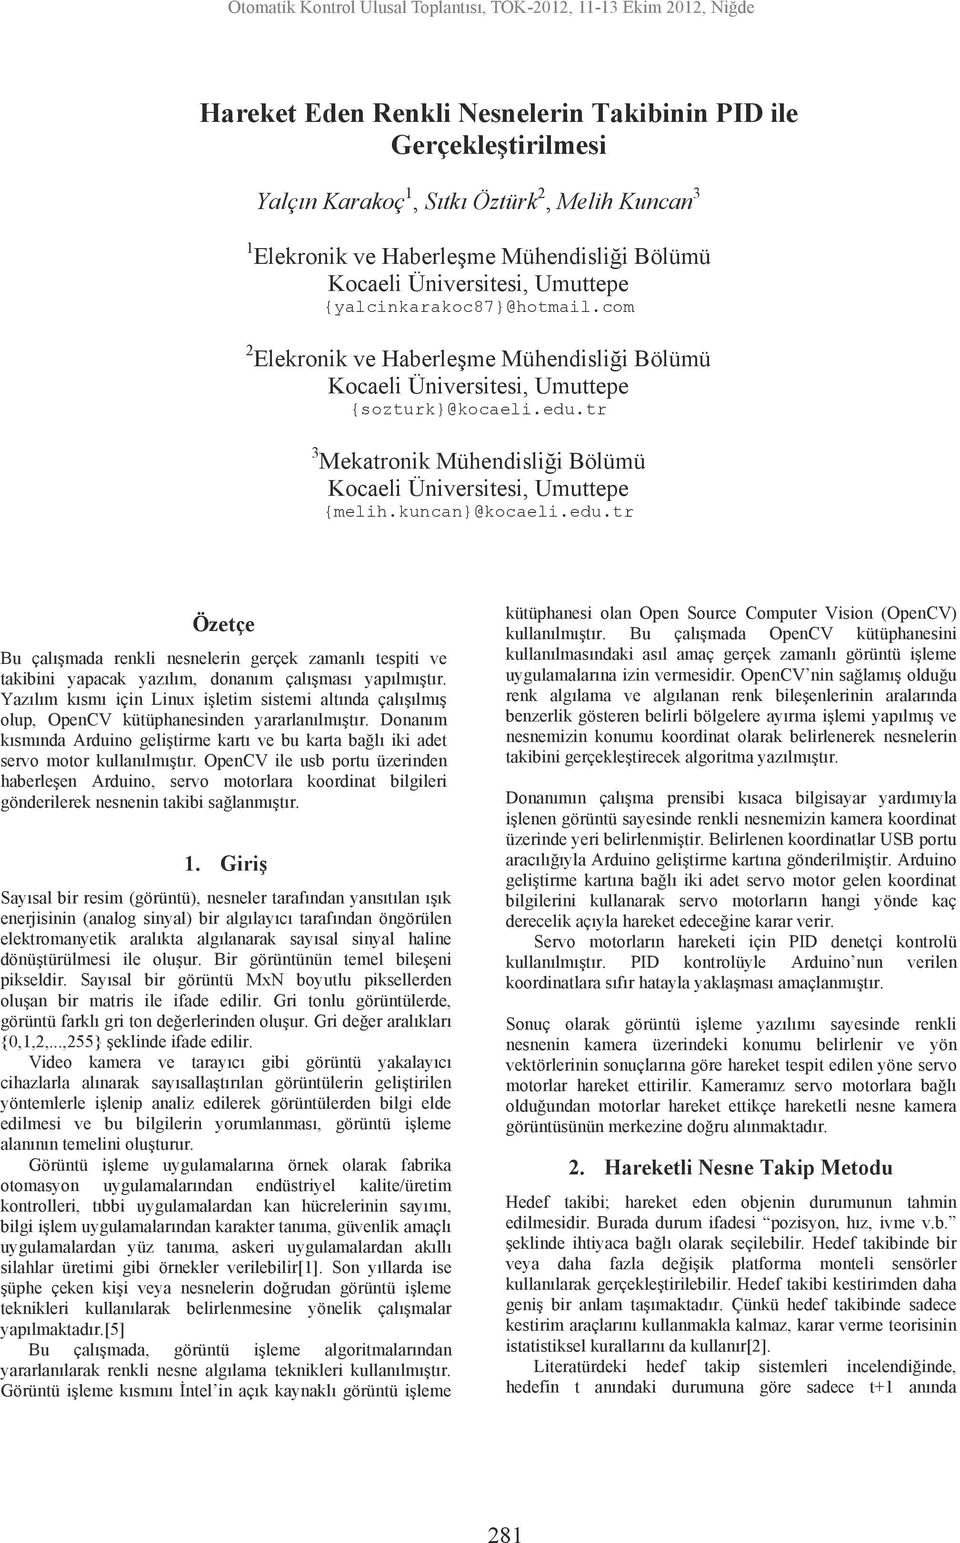 tr 3 Mekatronik Mühendisliği Bölümü Kocaeli Üniversitesi, Umuttepe {melih.kuncan}@kocaeli.edu.